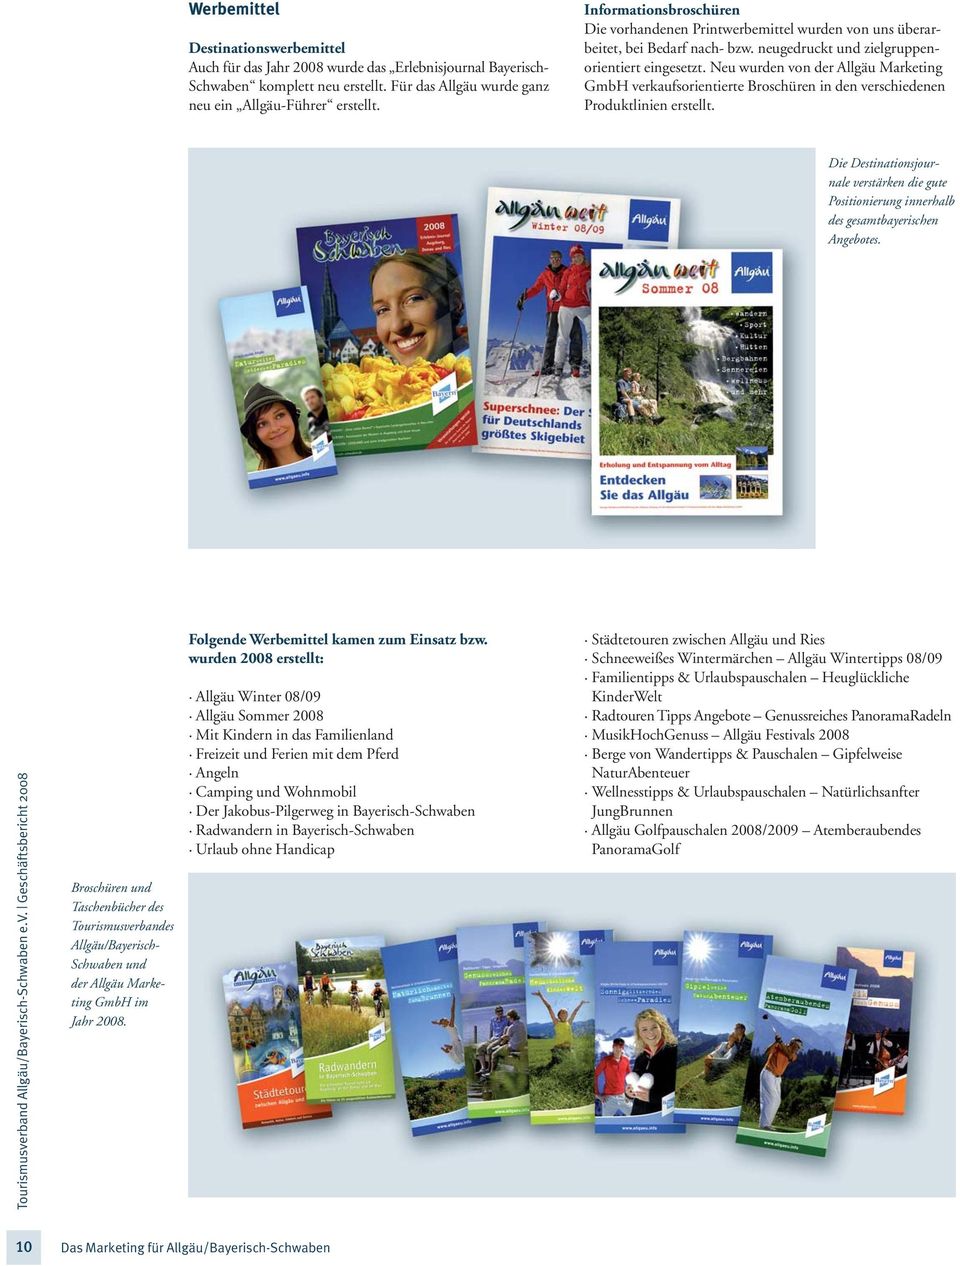 Neu wurden von der Allgäu Marketing GmbH verkaufsorientierte Broschüren in den verschiedenen Produktlinien erstellt.